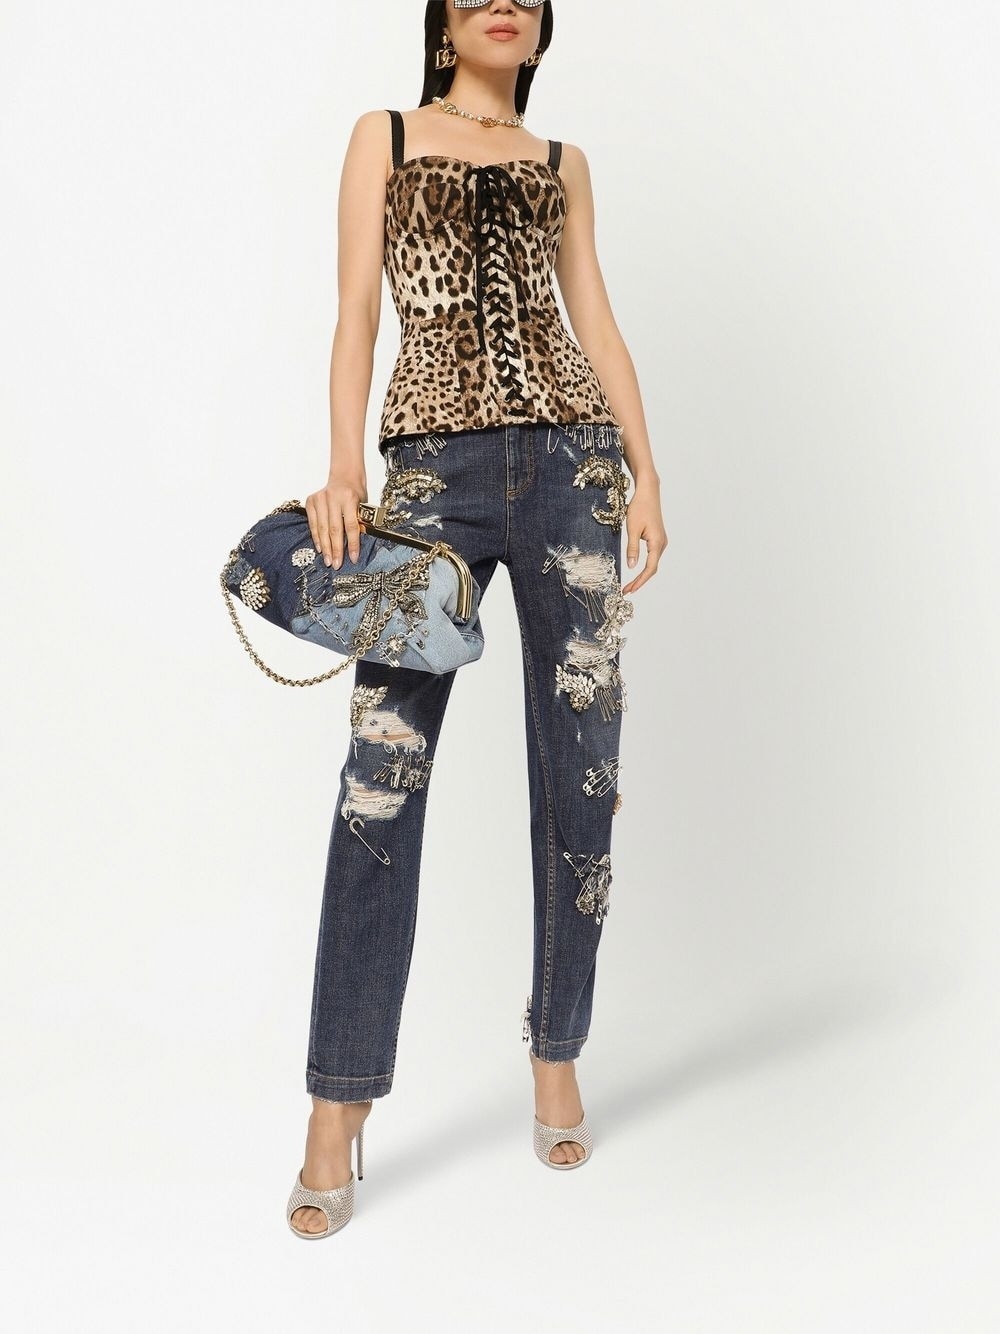 leopard-print lace-up corset - 2